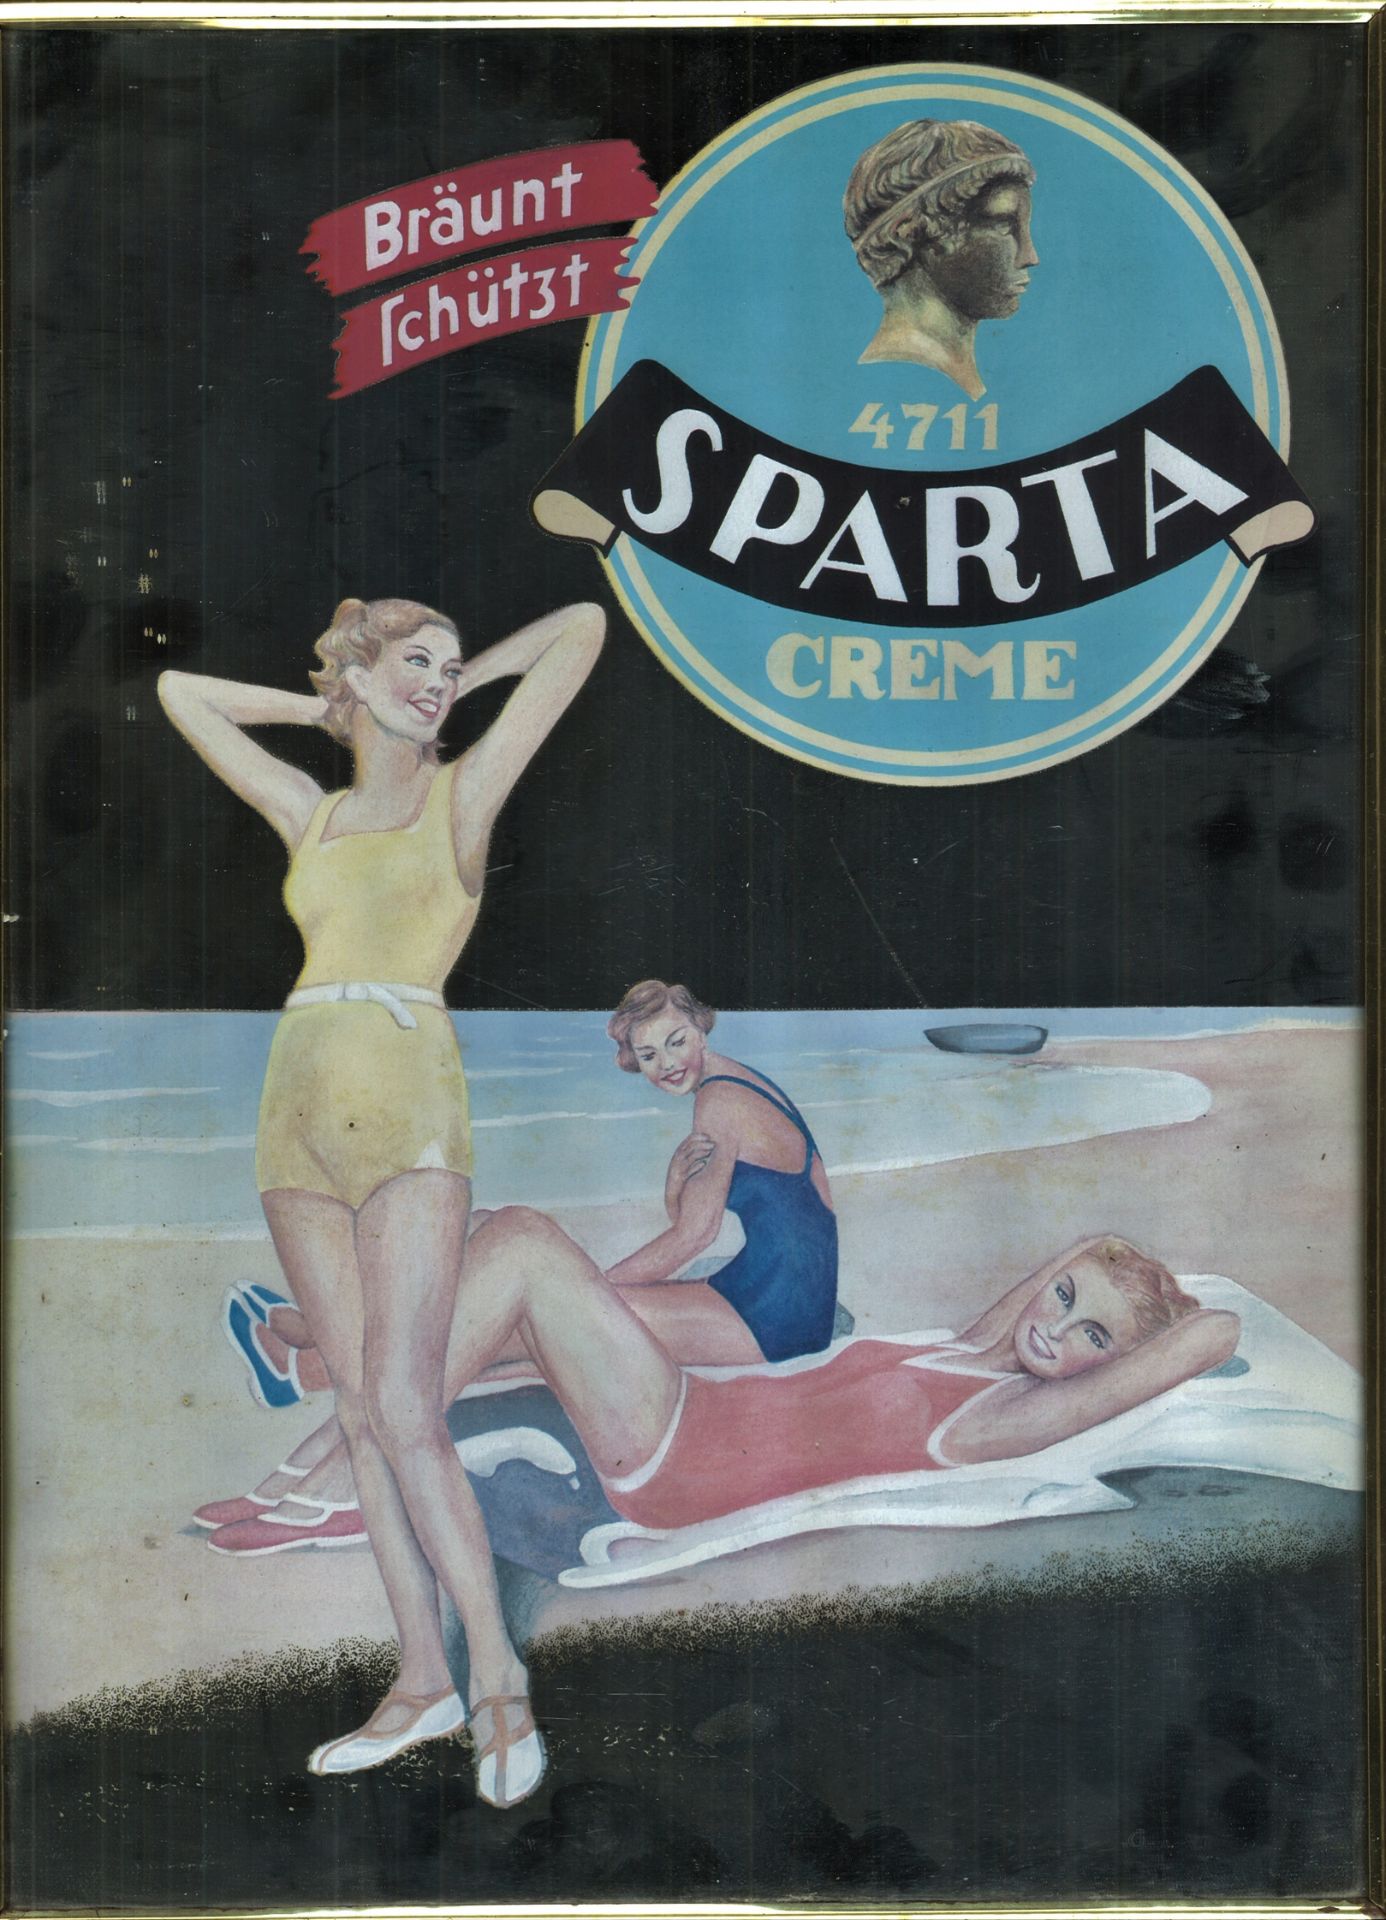 Werbespiegel 4711 Sparta Creme um 1960. "Bräunt, schützt" Cremedose. Drei hübsche Frauen am blauen